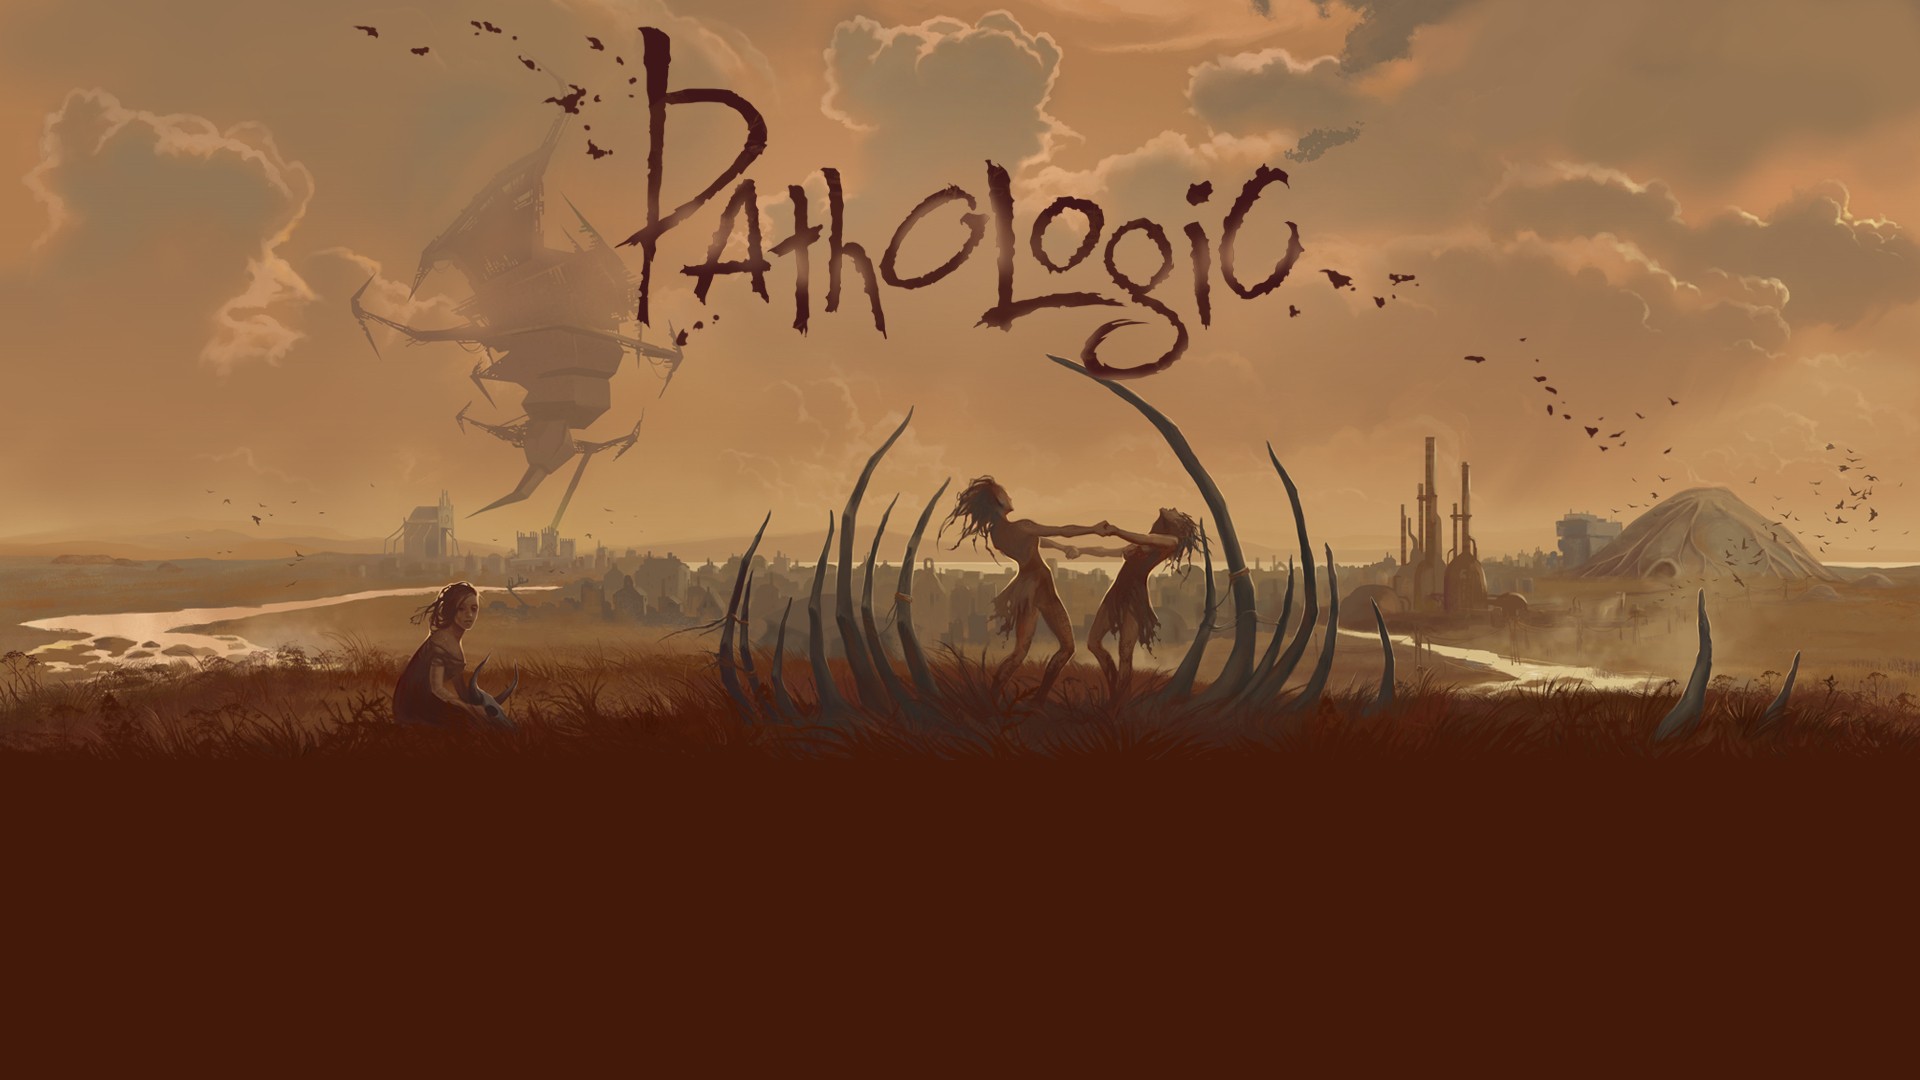 pathologic, Plague, Video Games, Brown, Dystopian, Plague Doctors, Death, Apocalyptic Wallpaper